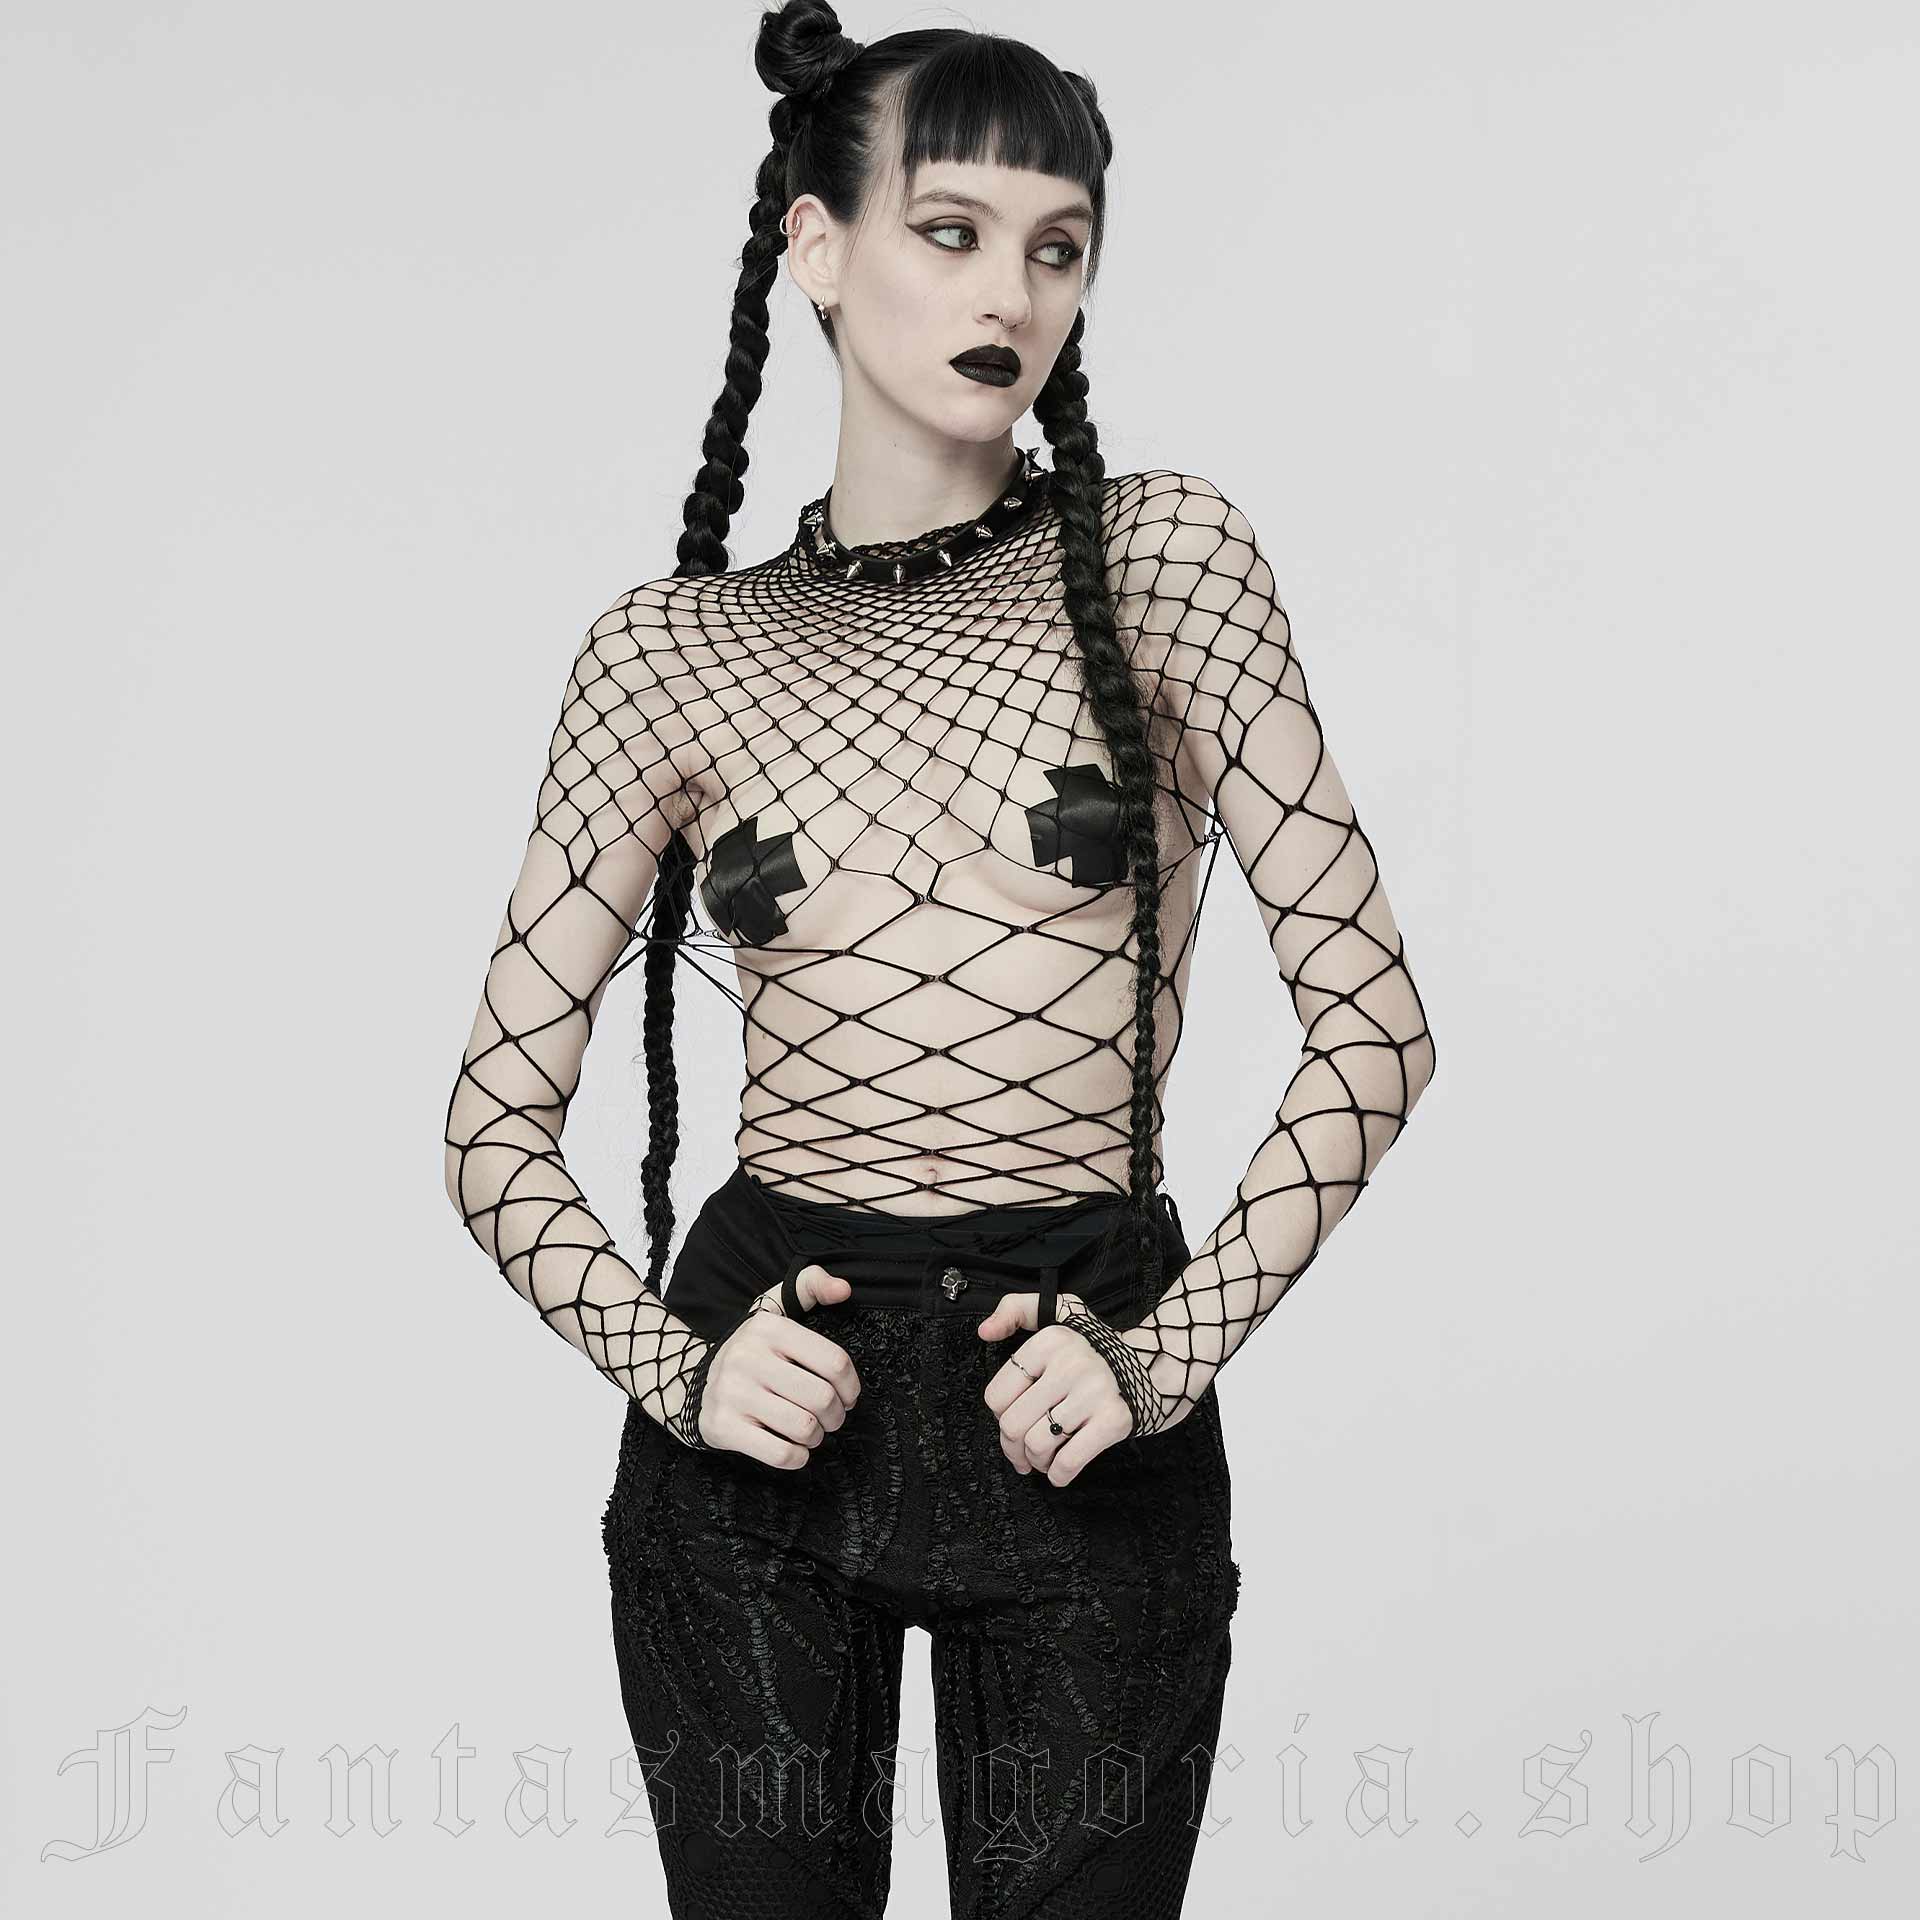 Gothic clubwear black wide mesh bodysuit.